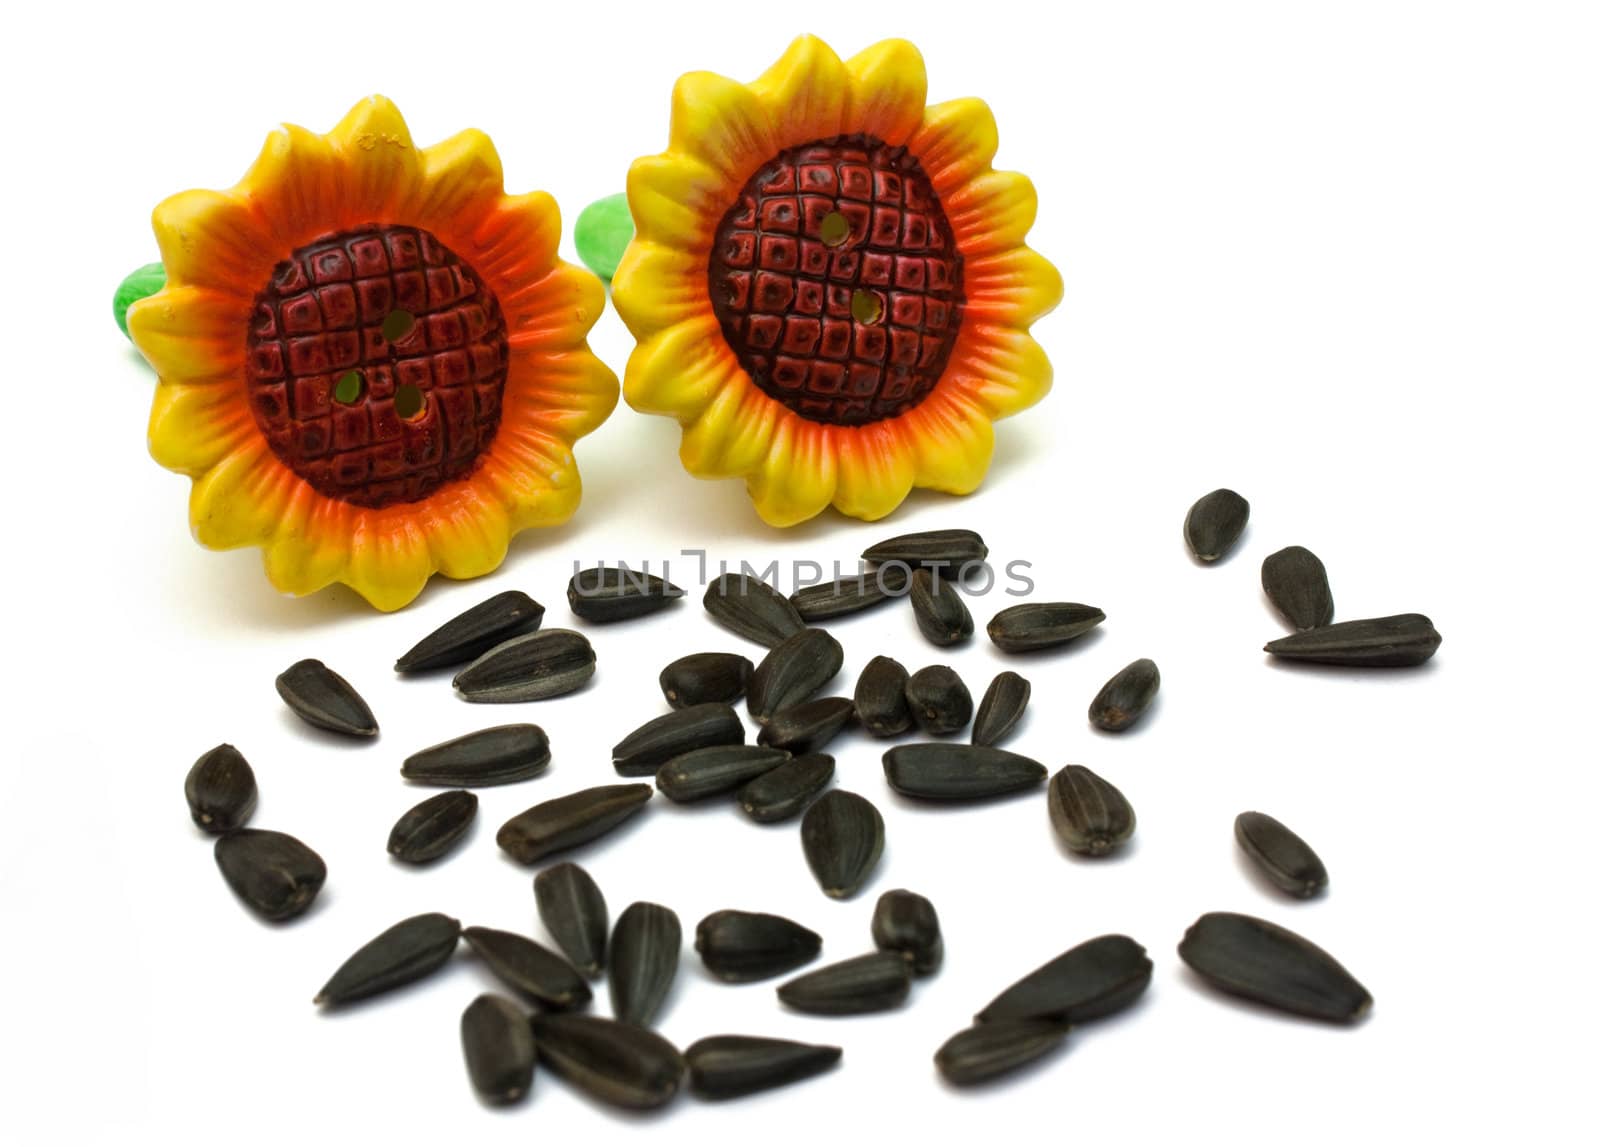 Sunflower-shaped salt shakers seed-shaped spicery